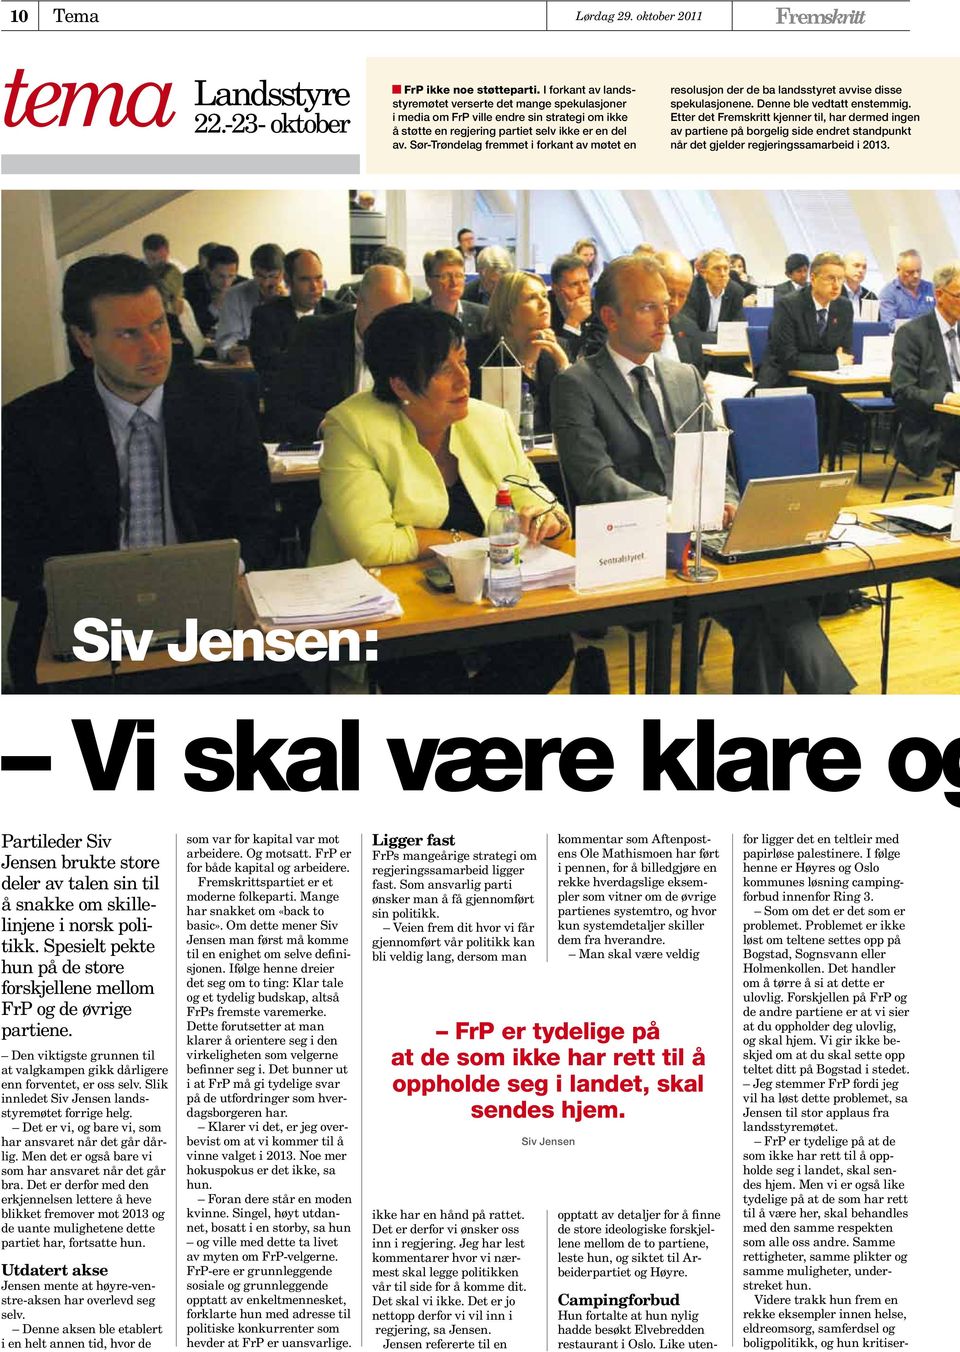 Sør-Trøndelag fremmet i forkant av møtet en resolusjon der de ba landsstyret avvise disse spekulasjonene. Denne ble vedtatt enstemmig.